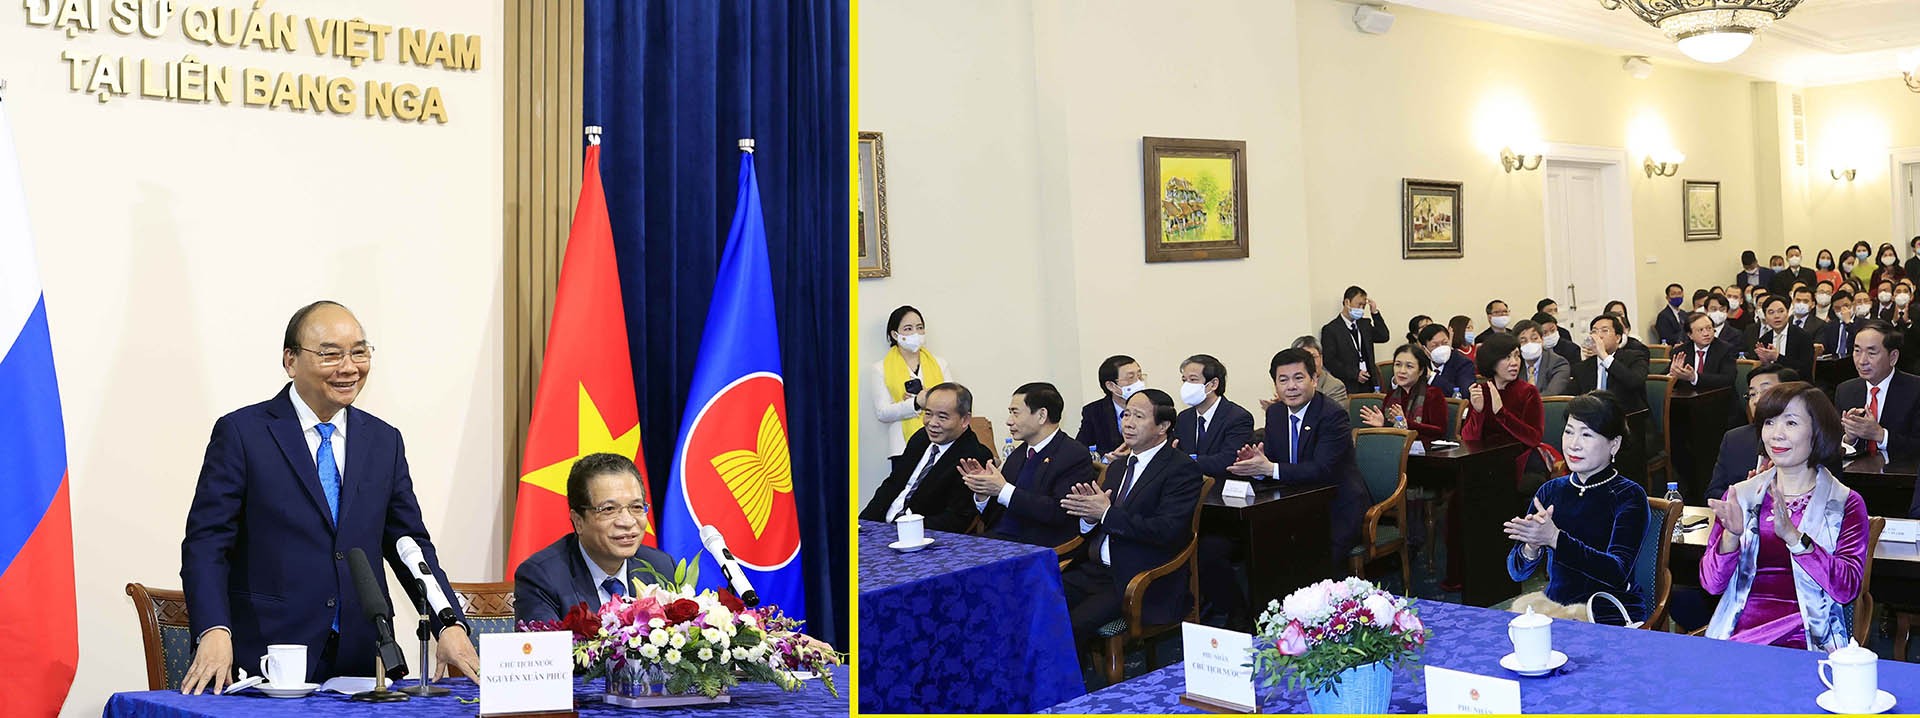 Chủ tịch nước Nguyễn Xuân Phúc gặp mặt cán bộ, nhân viên Đại sứ quán Việt Nam tại Liên bang Nga. (Nguồn: TTXVN)